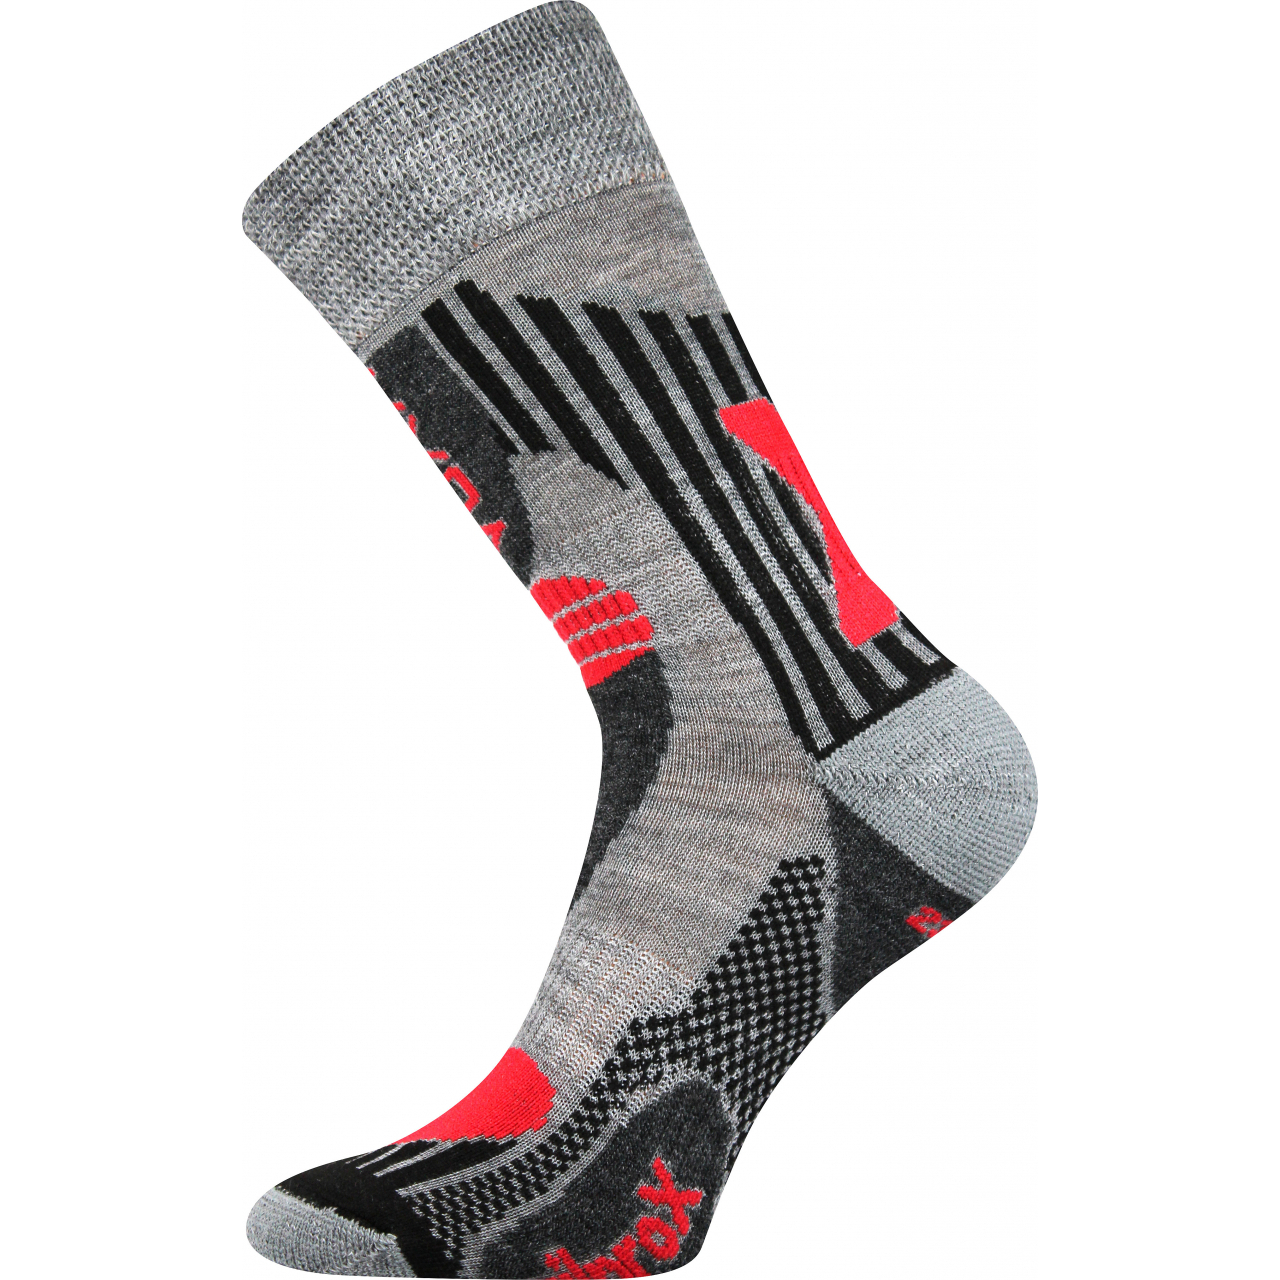 Ponožky unisex termo Voxx Vision - světle šedé-červené, 43-46